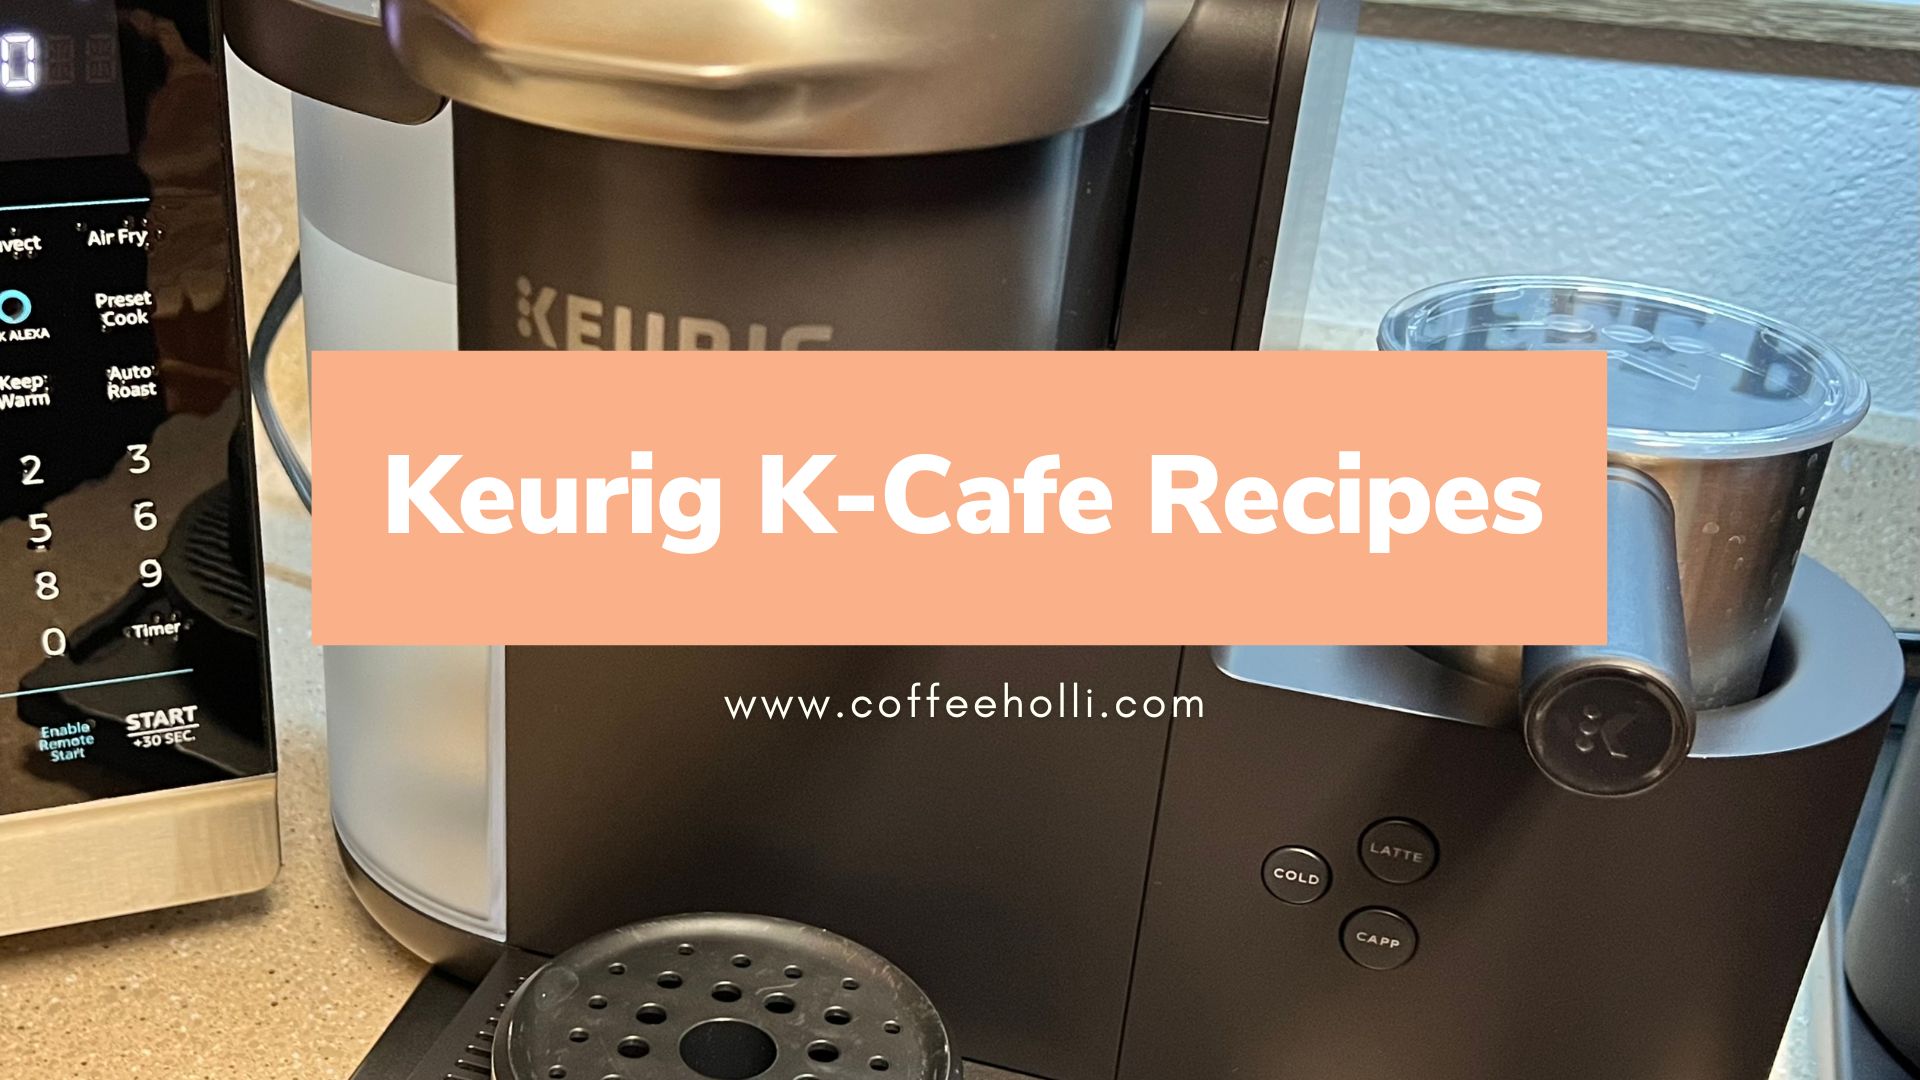 Keurig K-Cafe Recipes